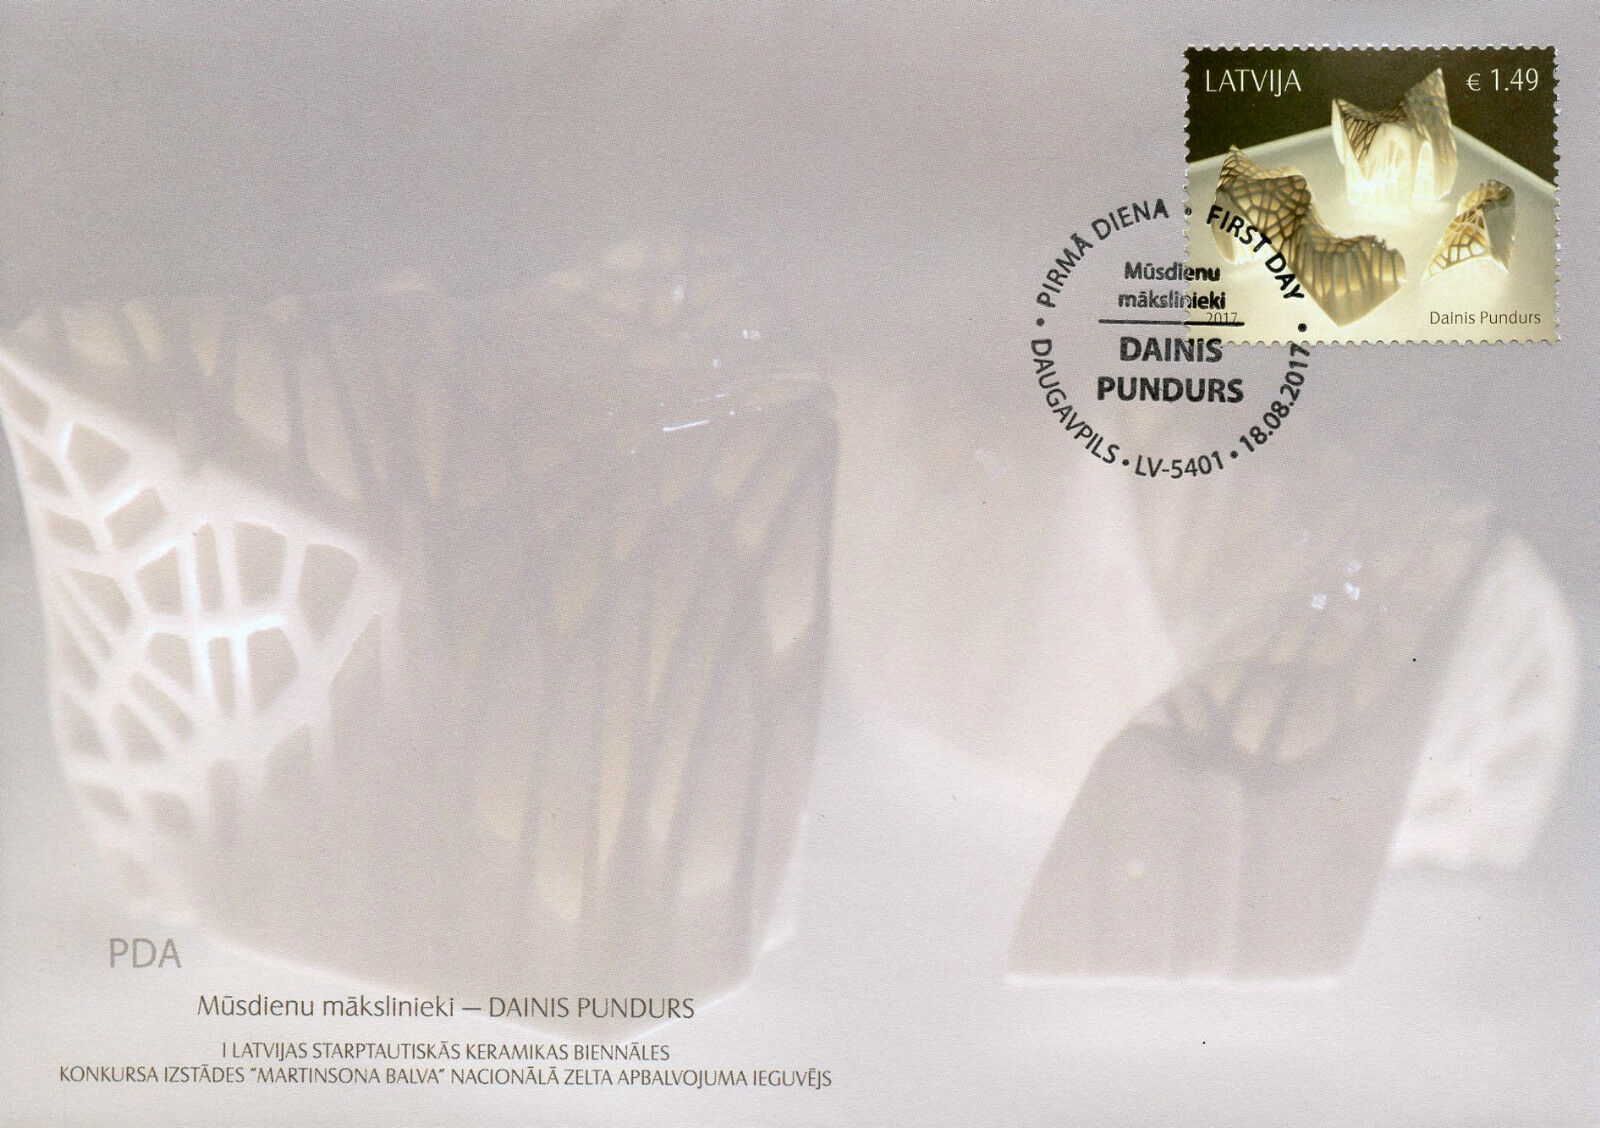 Latvia 2017 FDC Dainis Pundus Contemporary Art 1v Set Cover Stamps